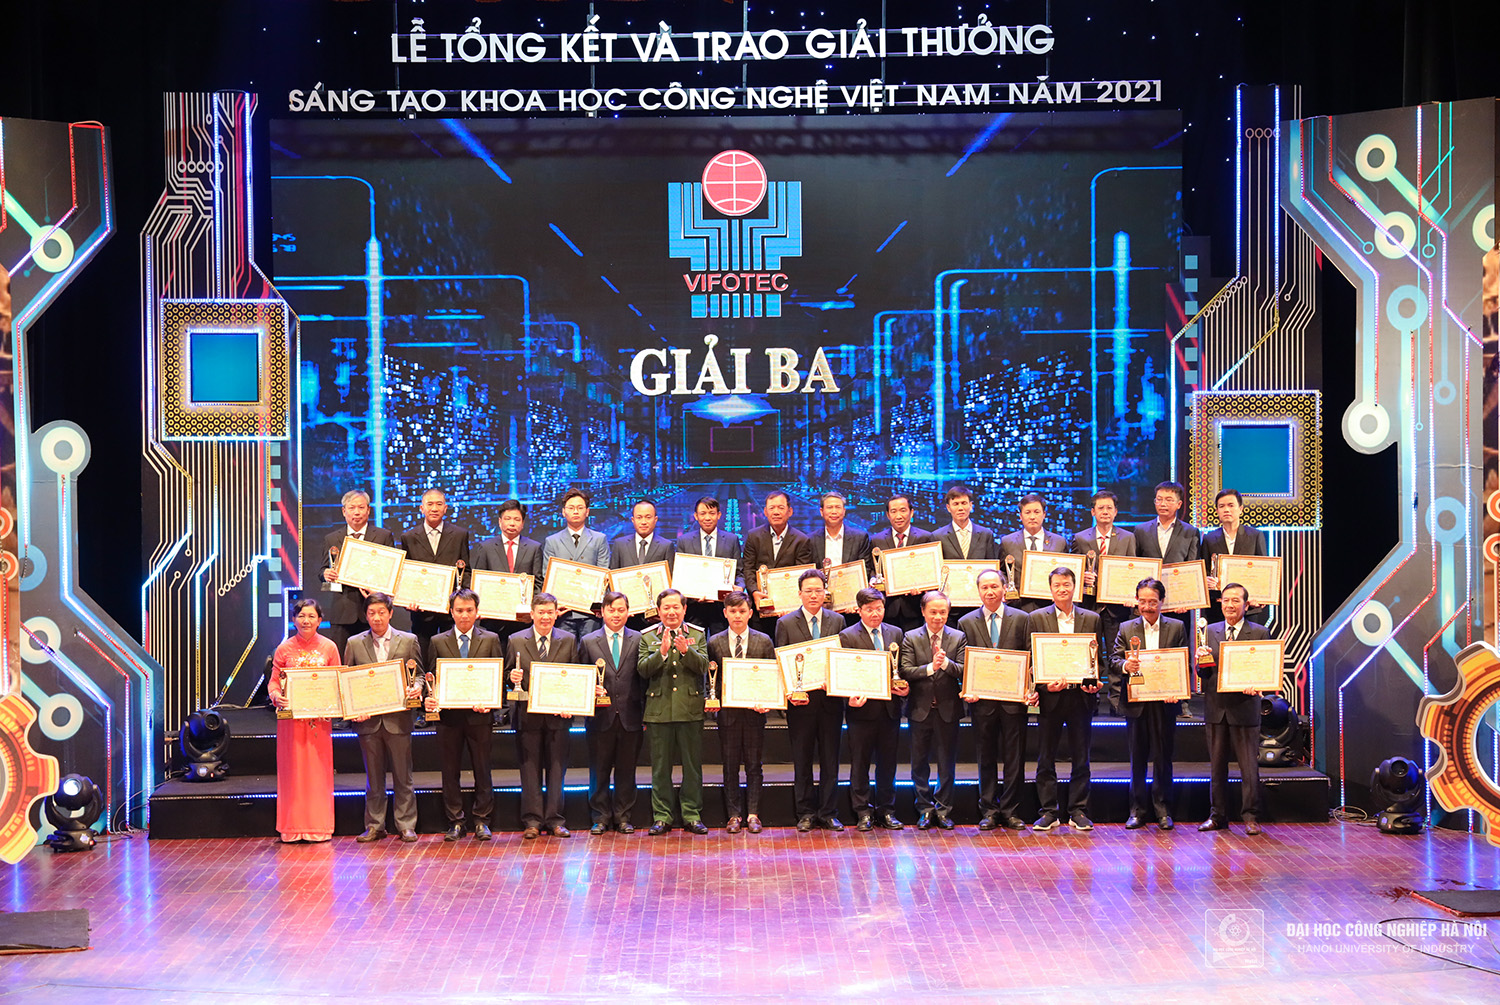 2 nhóm nghiên cứu Trường Đại học Công nghiệp Hà Nội đạt giải Nhì và giải Ba “Giải thưởng Sáng tạo Khoa học Công nghệ Việt Nam năm 2021”